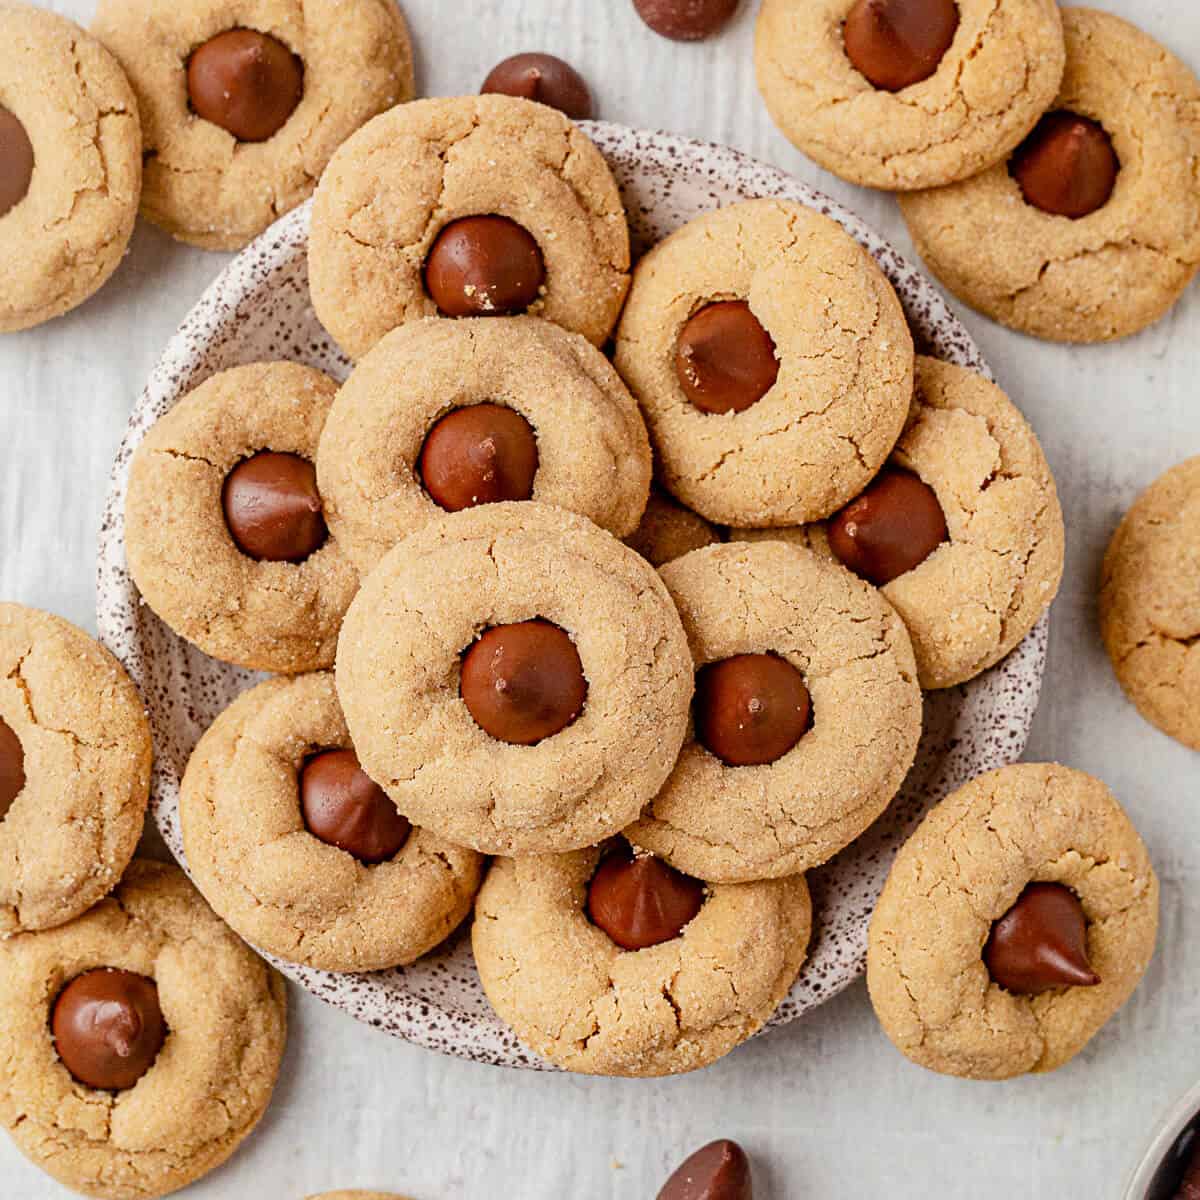 20 Easy Christmas Crockpot Recipes - Peanut Blossom